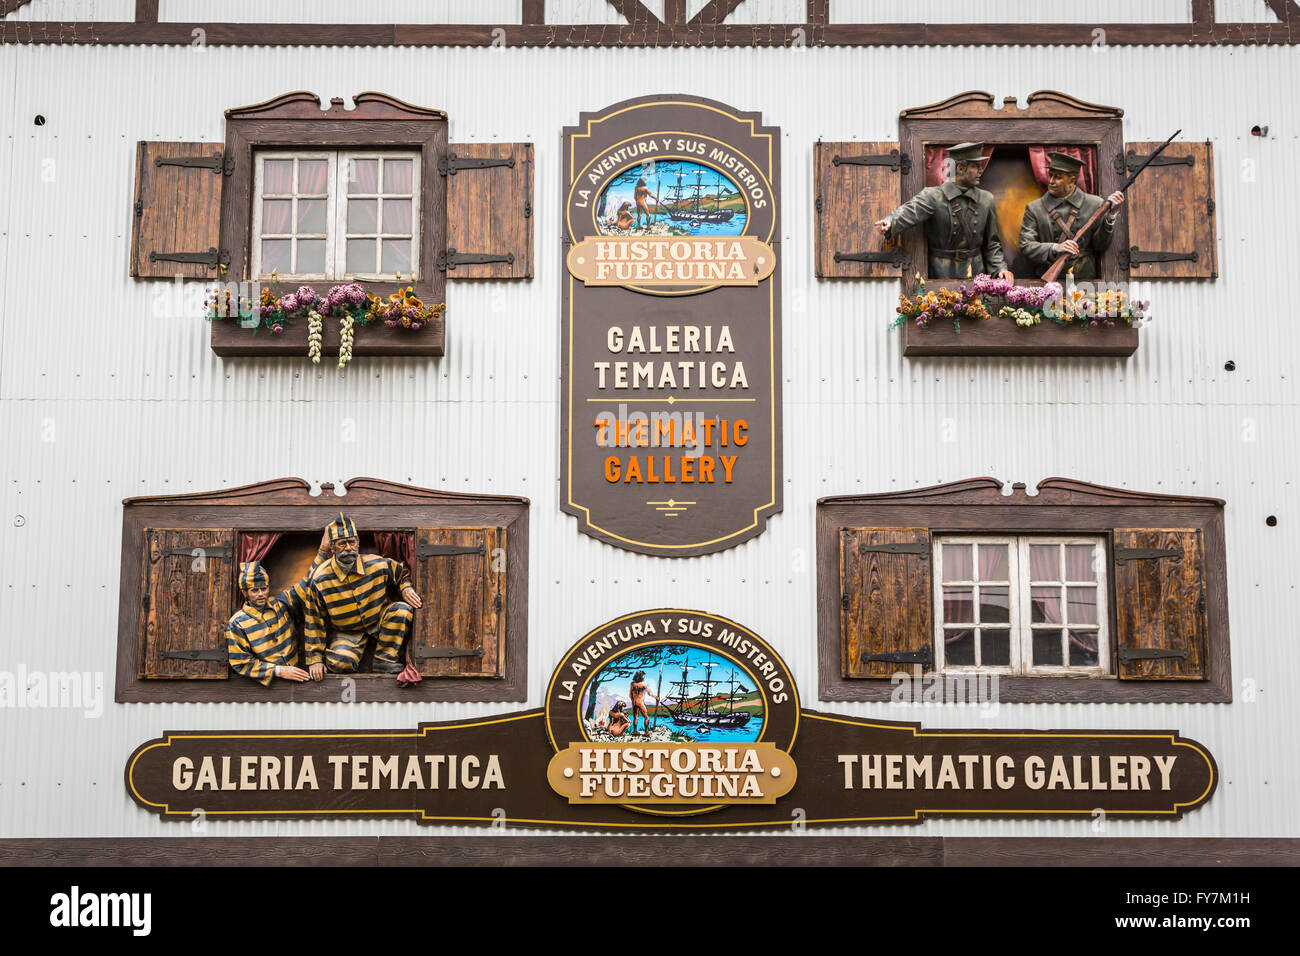 Eine thematische Galerie in der Innenstadt von Ushuaia, Argentinien, Südamerika. Stockfoto